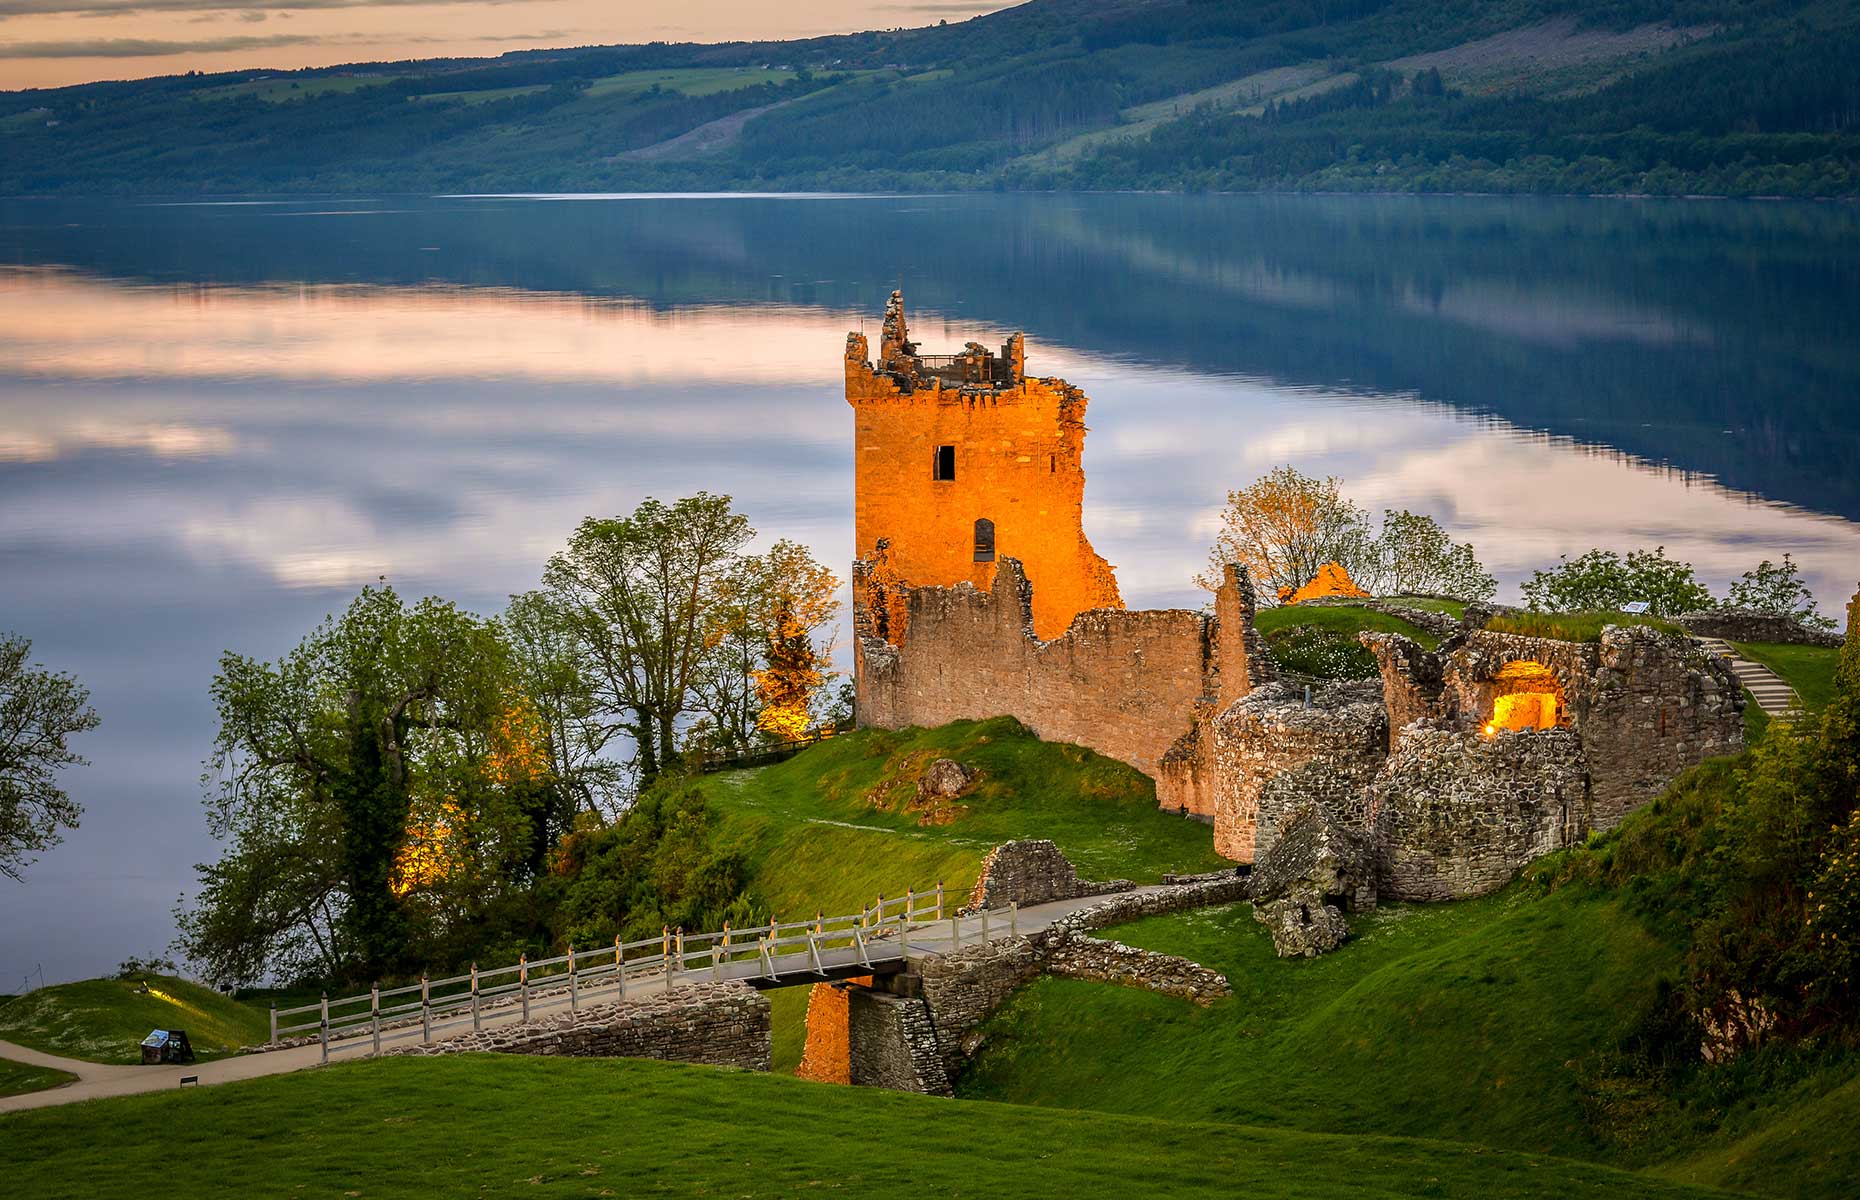 Loch Ness (Image: nitsawan katerattanakul/Shutterstock)